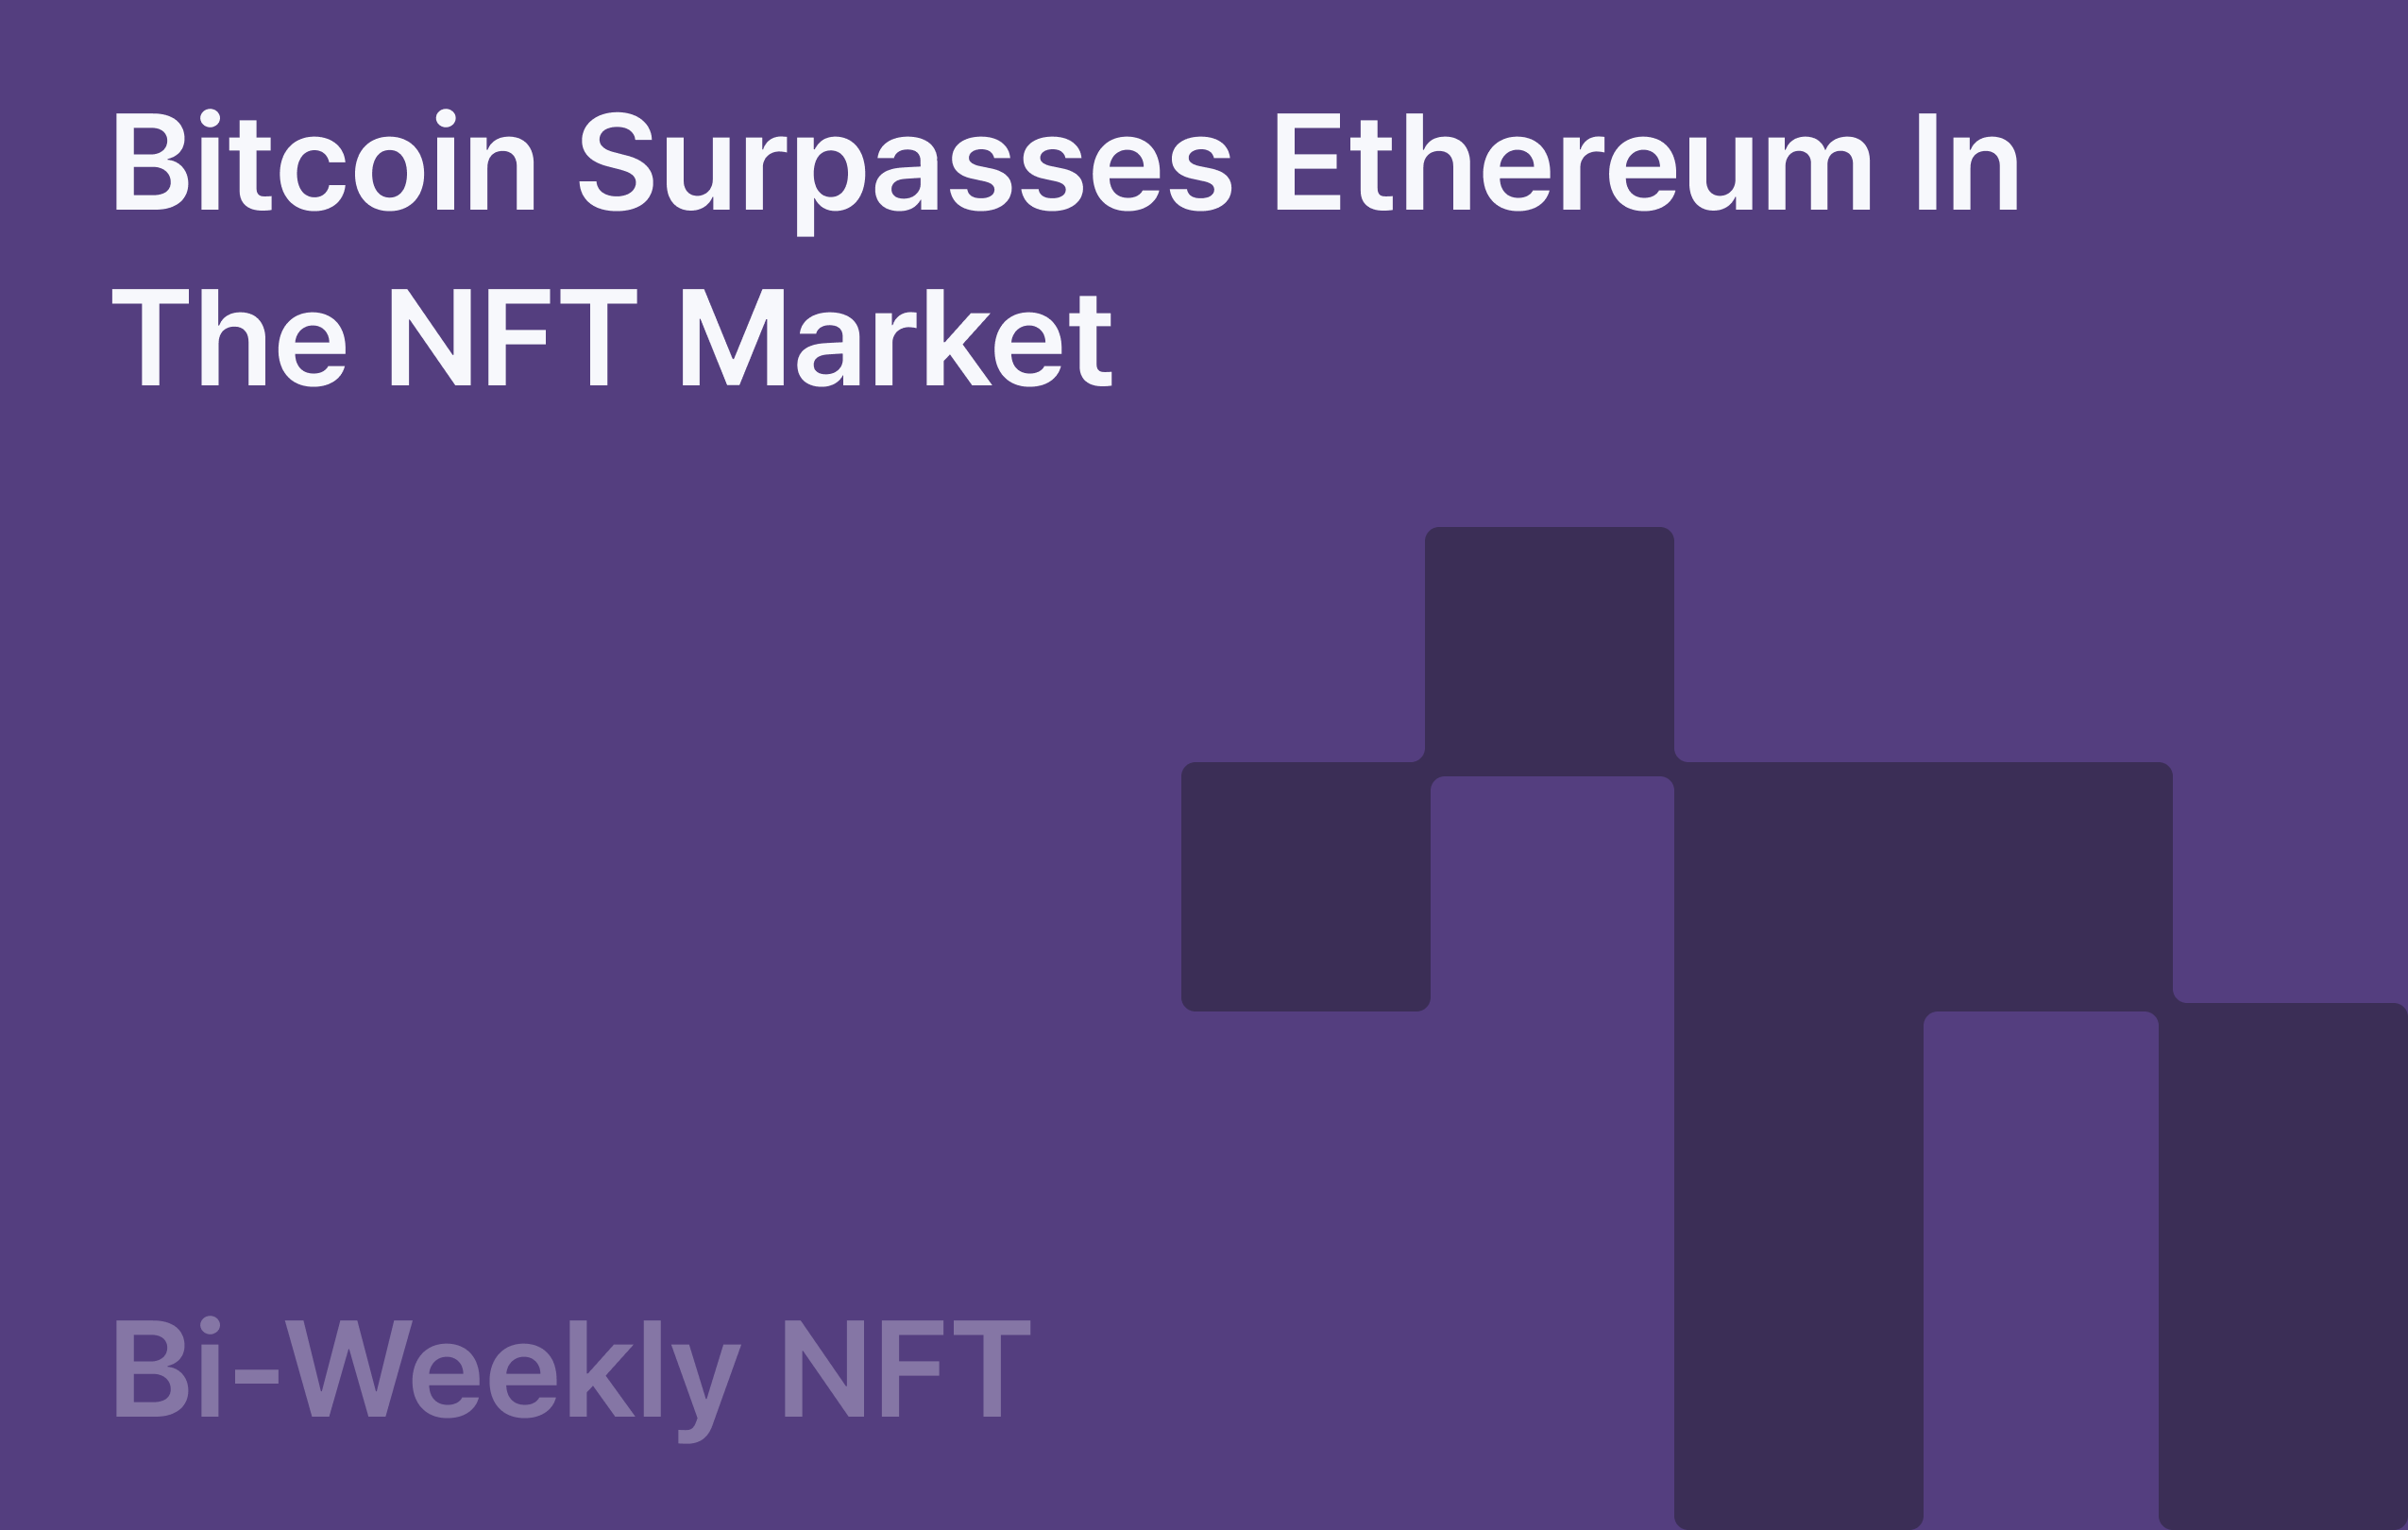 Bi-Weekly NFT: Bitcoin surpasses Ethereum in the NFT Market